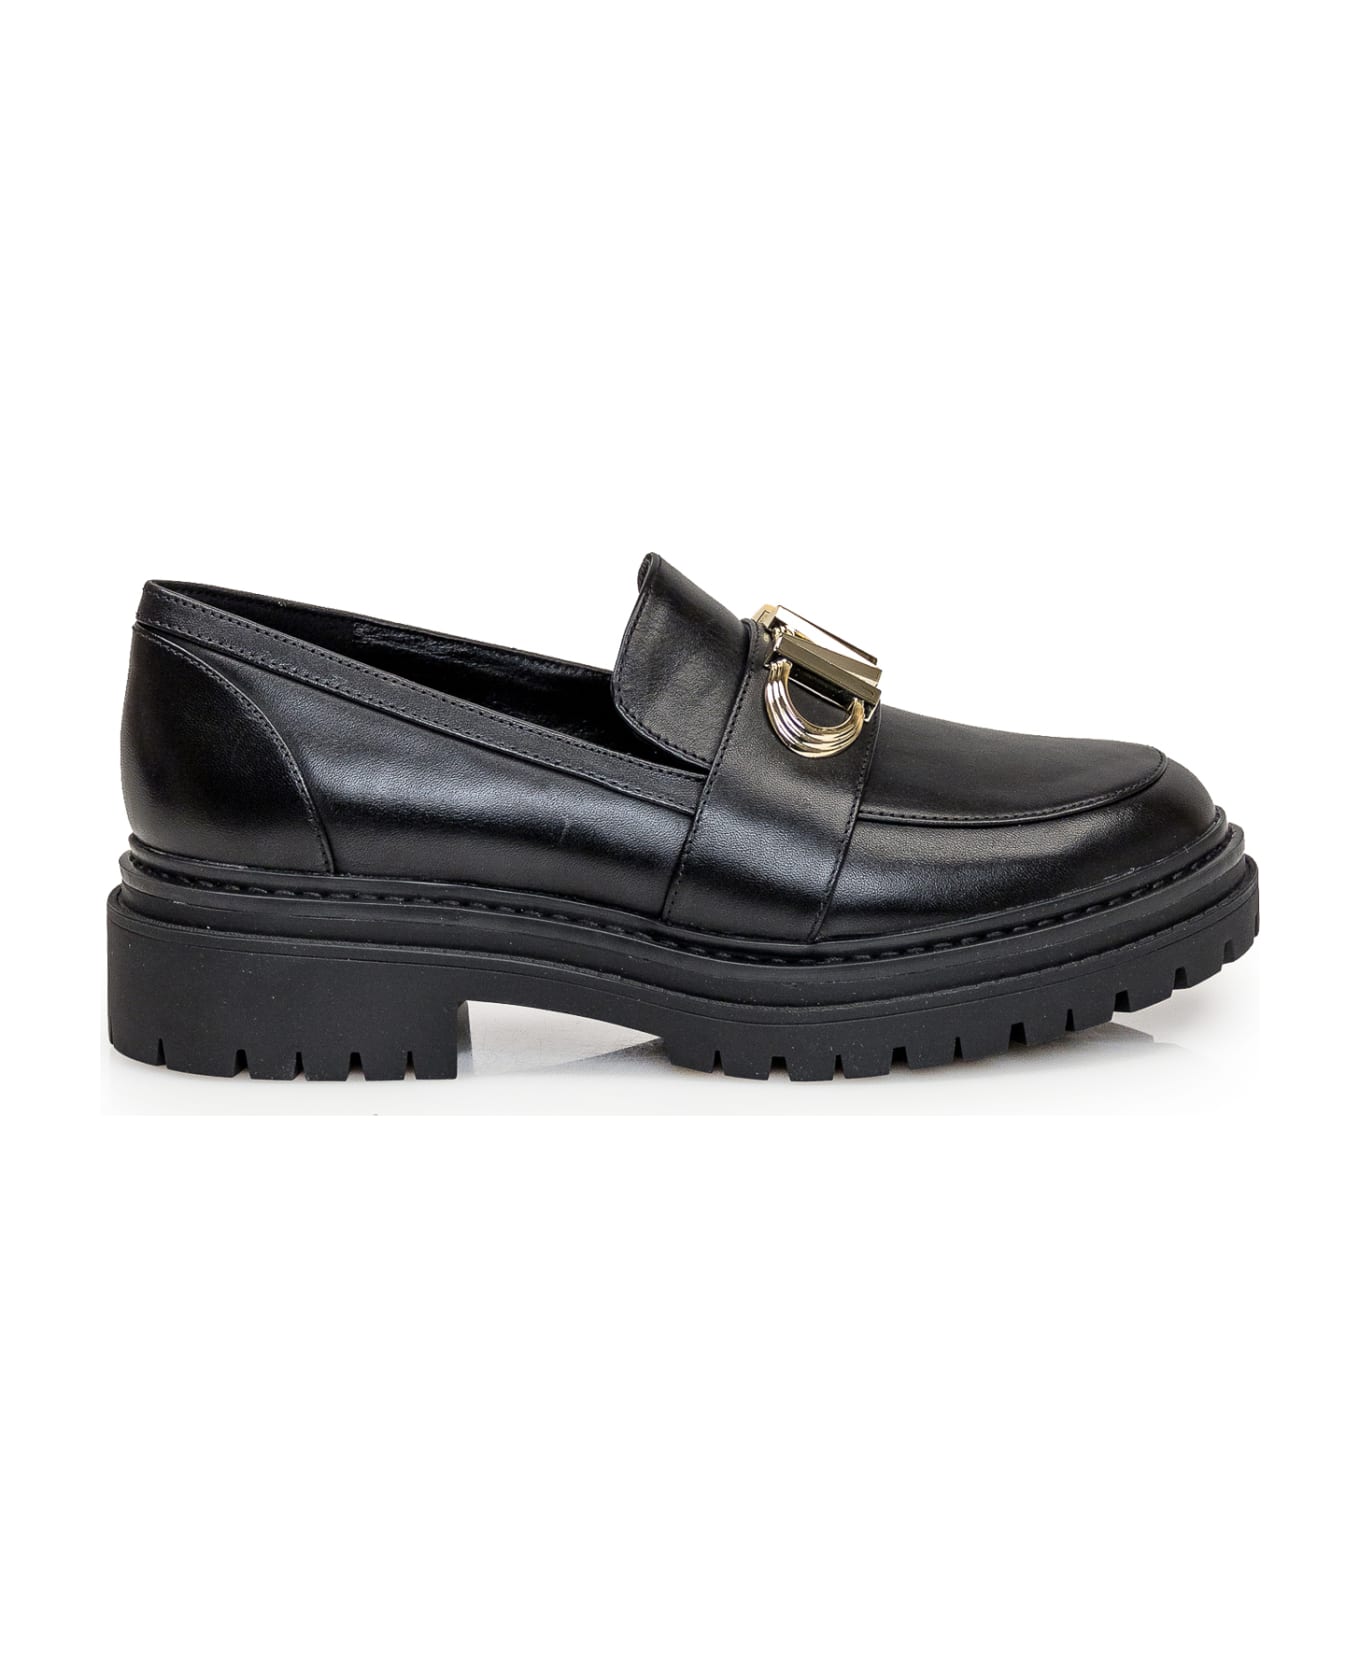 Michael Kors Collection Parker Leather Loafer - Black